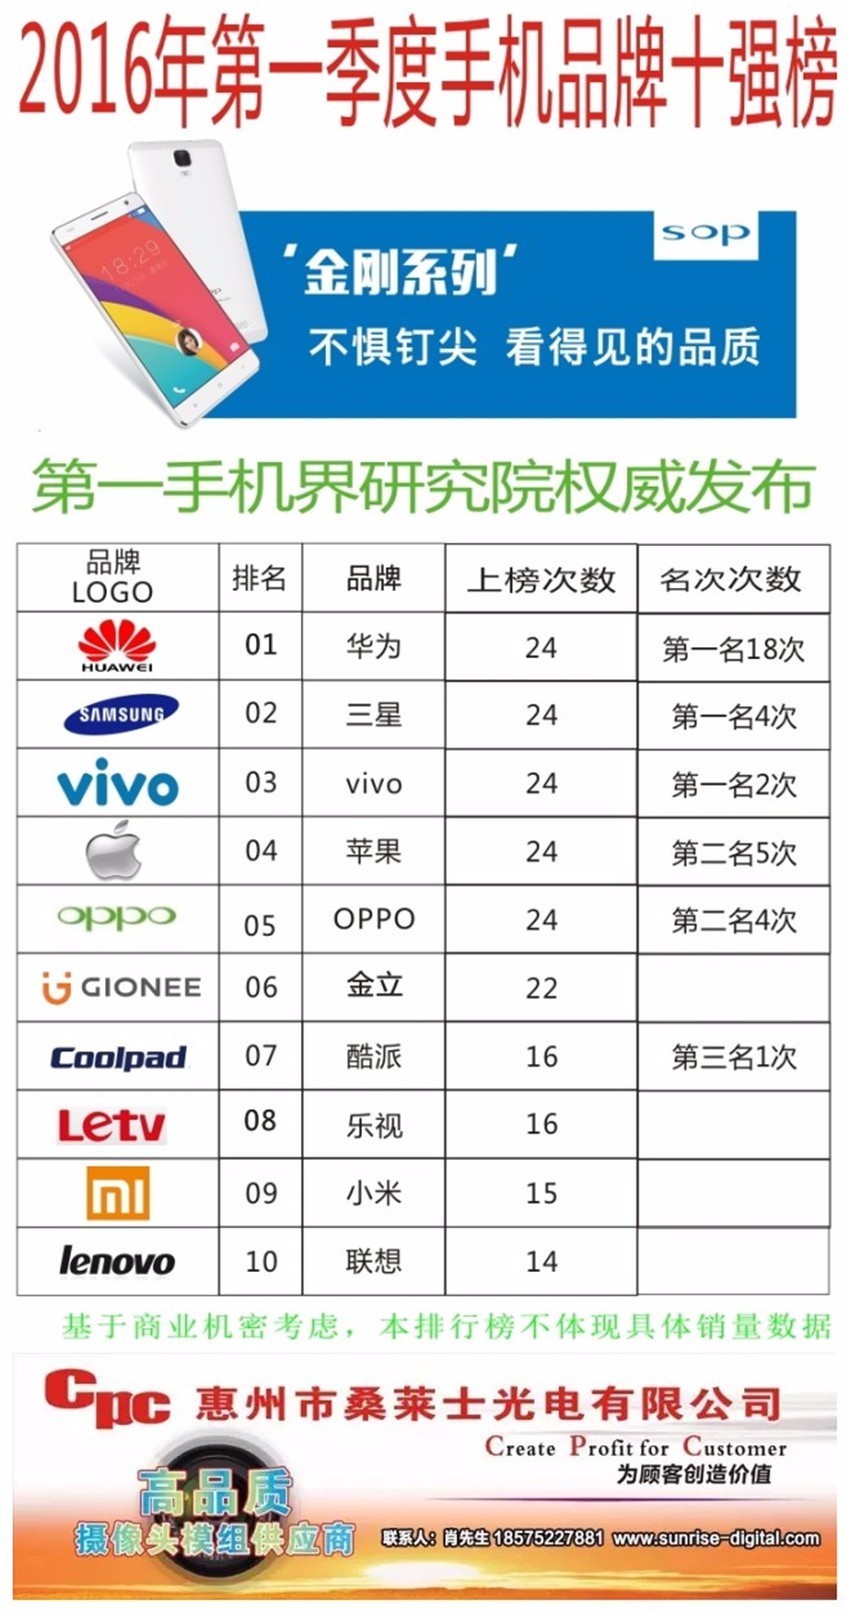 2016第一季度品牌手机10强榜  华为公司、三星、vivo成前